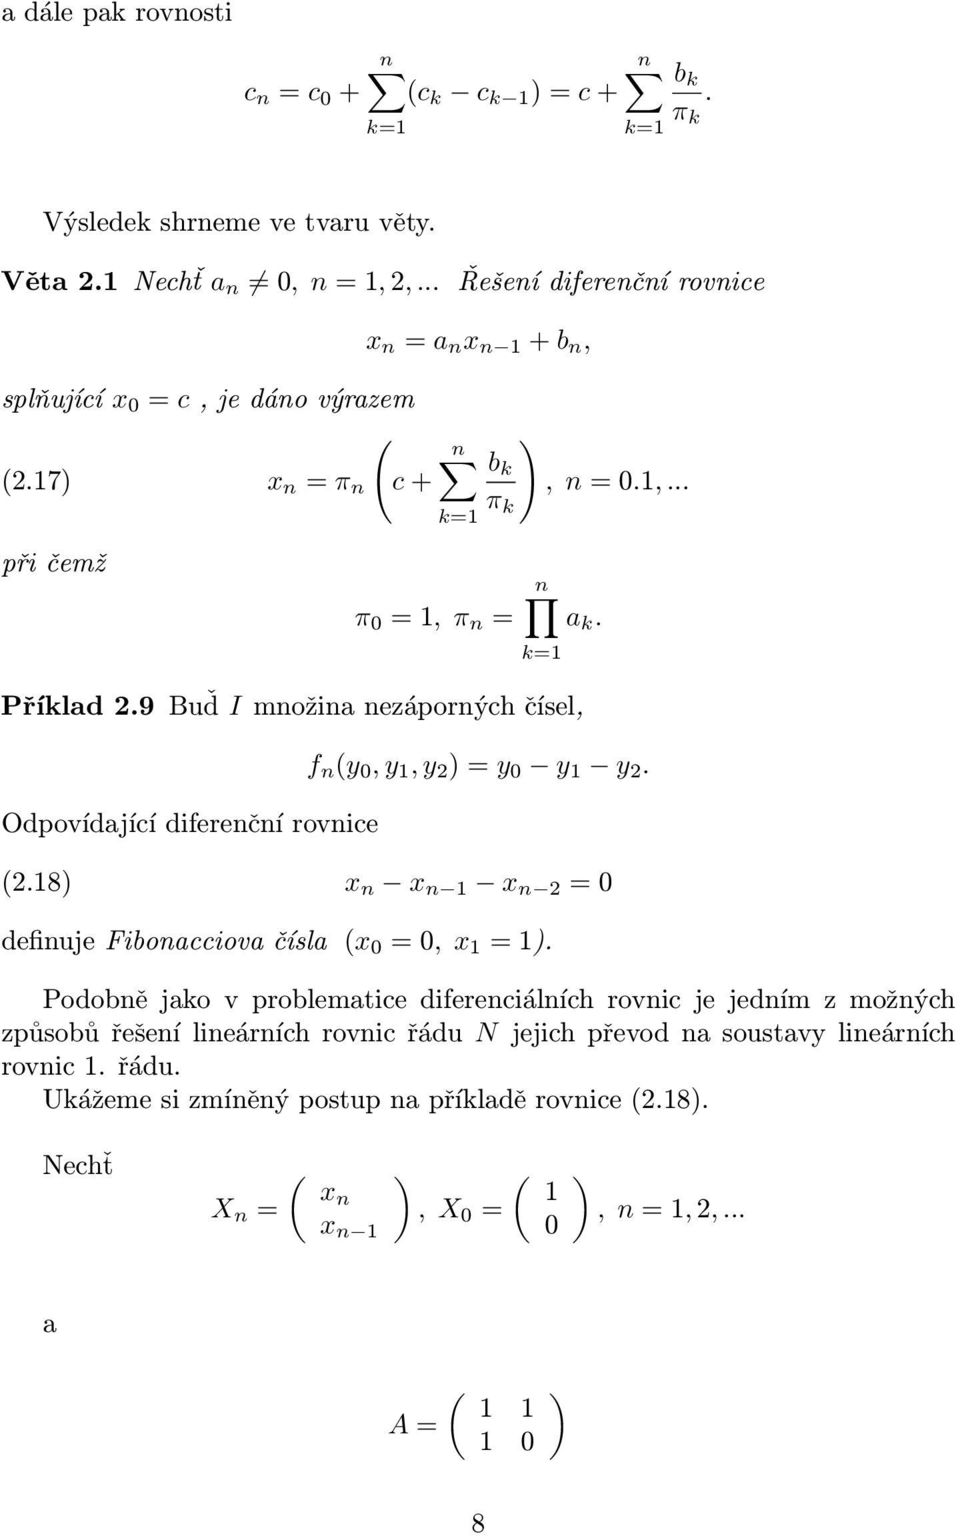 Odpovídjící diferenční rovnice (218) x n x n 1 x n 2 = 0 definuje Fiboncciov čísl (x 0 = 0, x 1 = 1) Podobně jko v problemtice diferenciálních rovnic je jedním z možných způsobů řešení